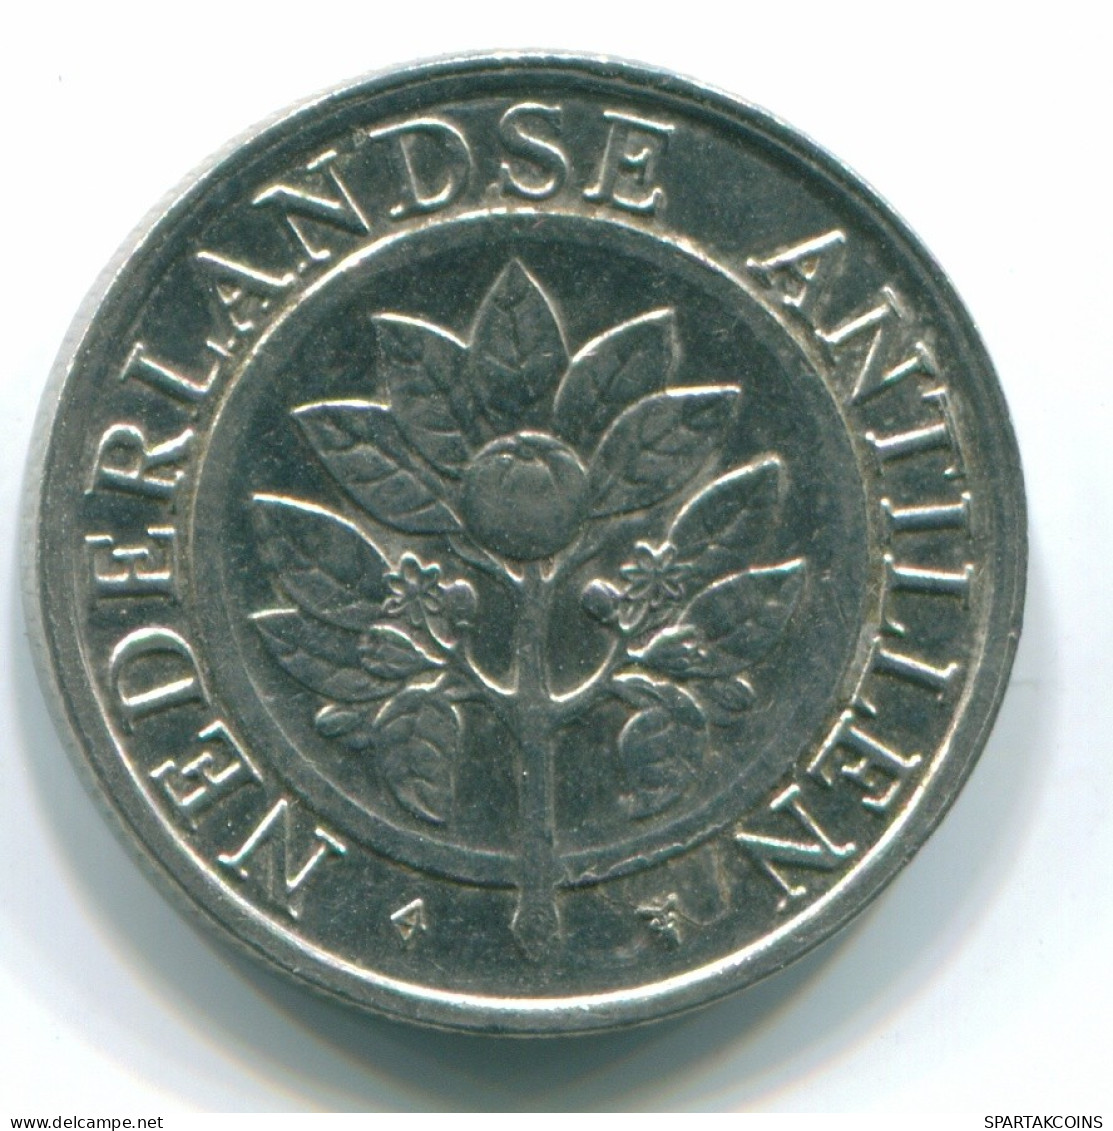 25 CENTS 1990 NETHERLANDS ANTILLES Nickel Colonial Coin #S11276.U.A - Antillas Neerlandesas